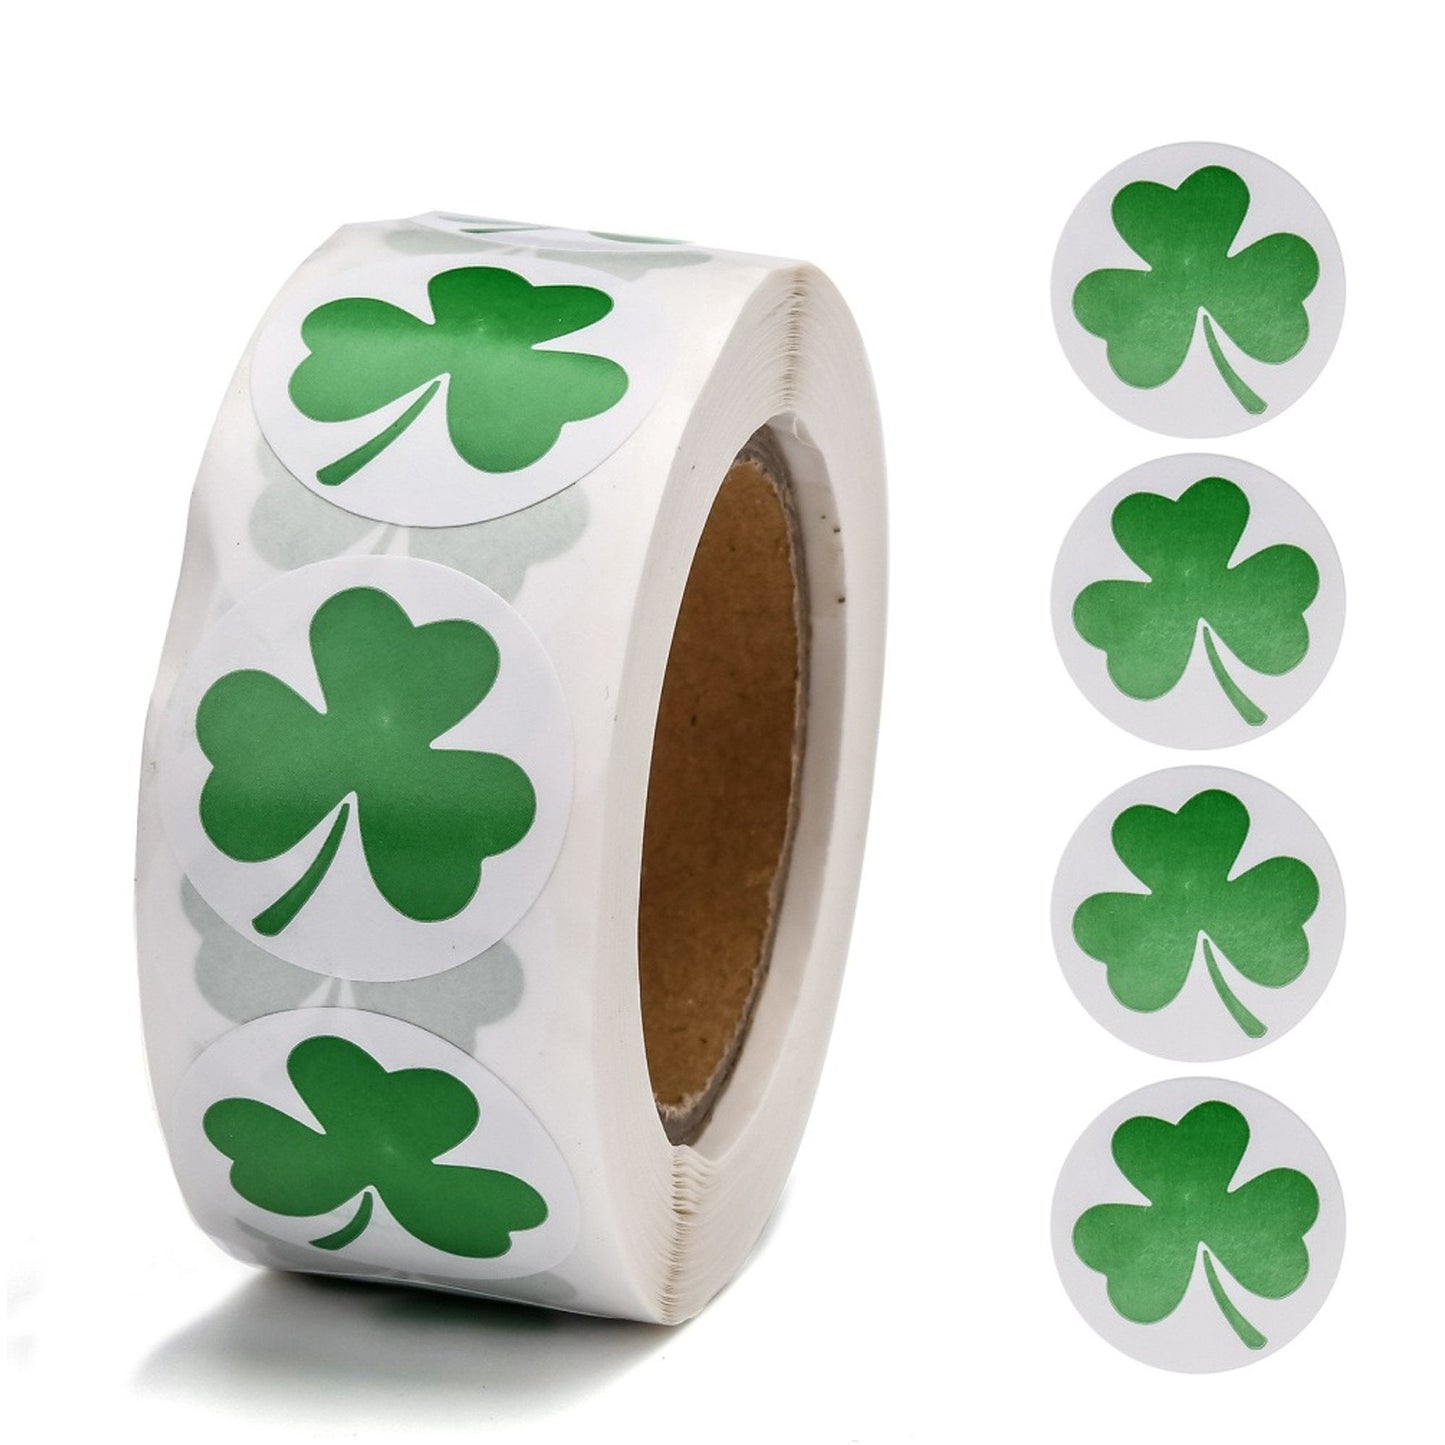 1 Roll 500pcs St Patricks Day Shamrock Clover Leaf Paper Sticker Labels 25mm